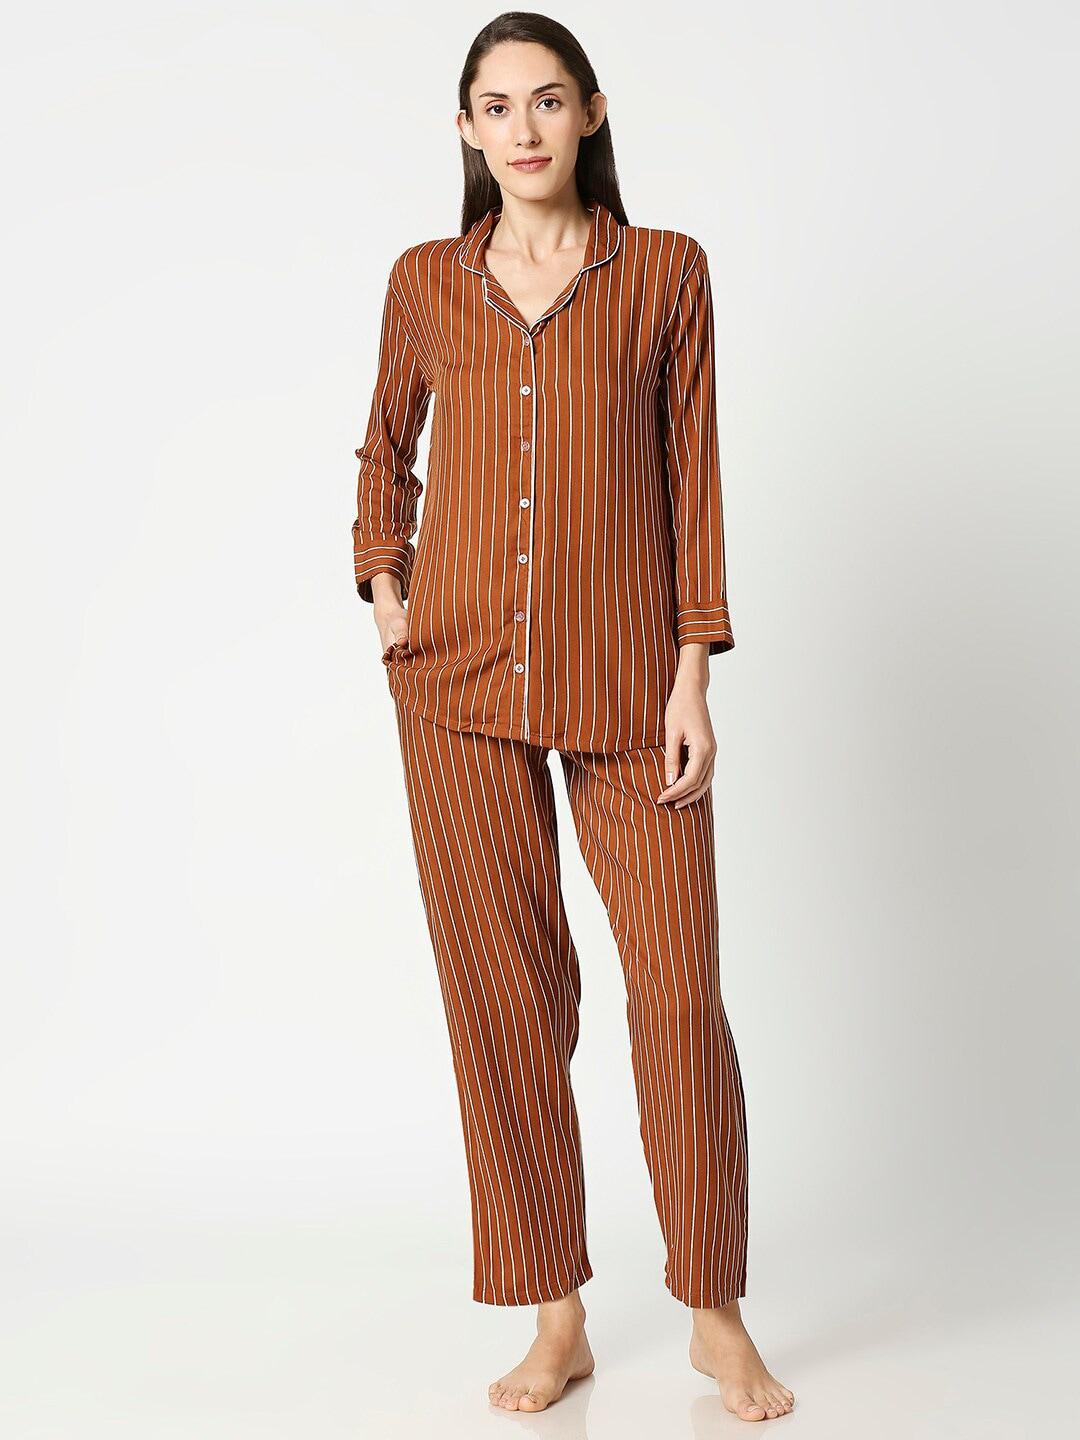 av2-women-brown-&-white-striped-night-suit